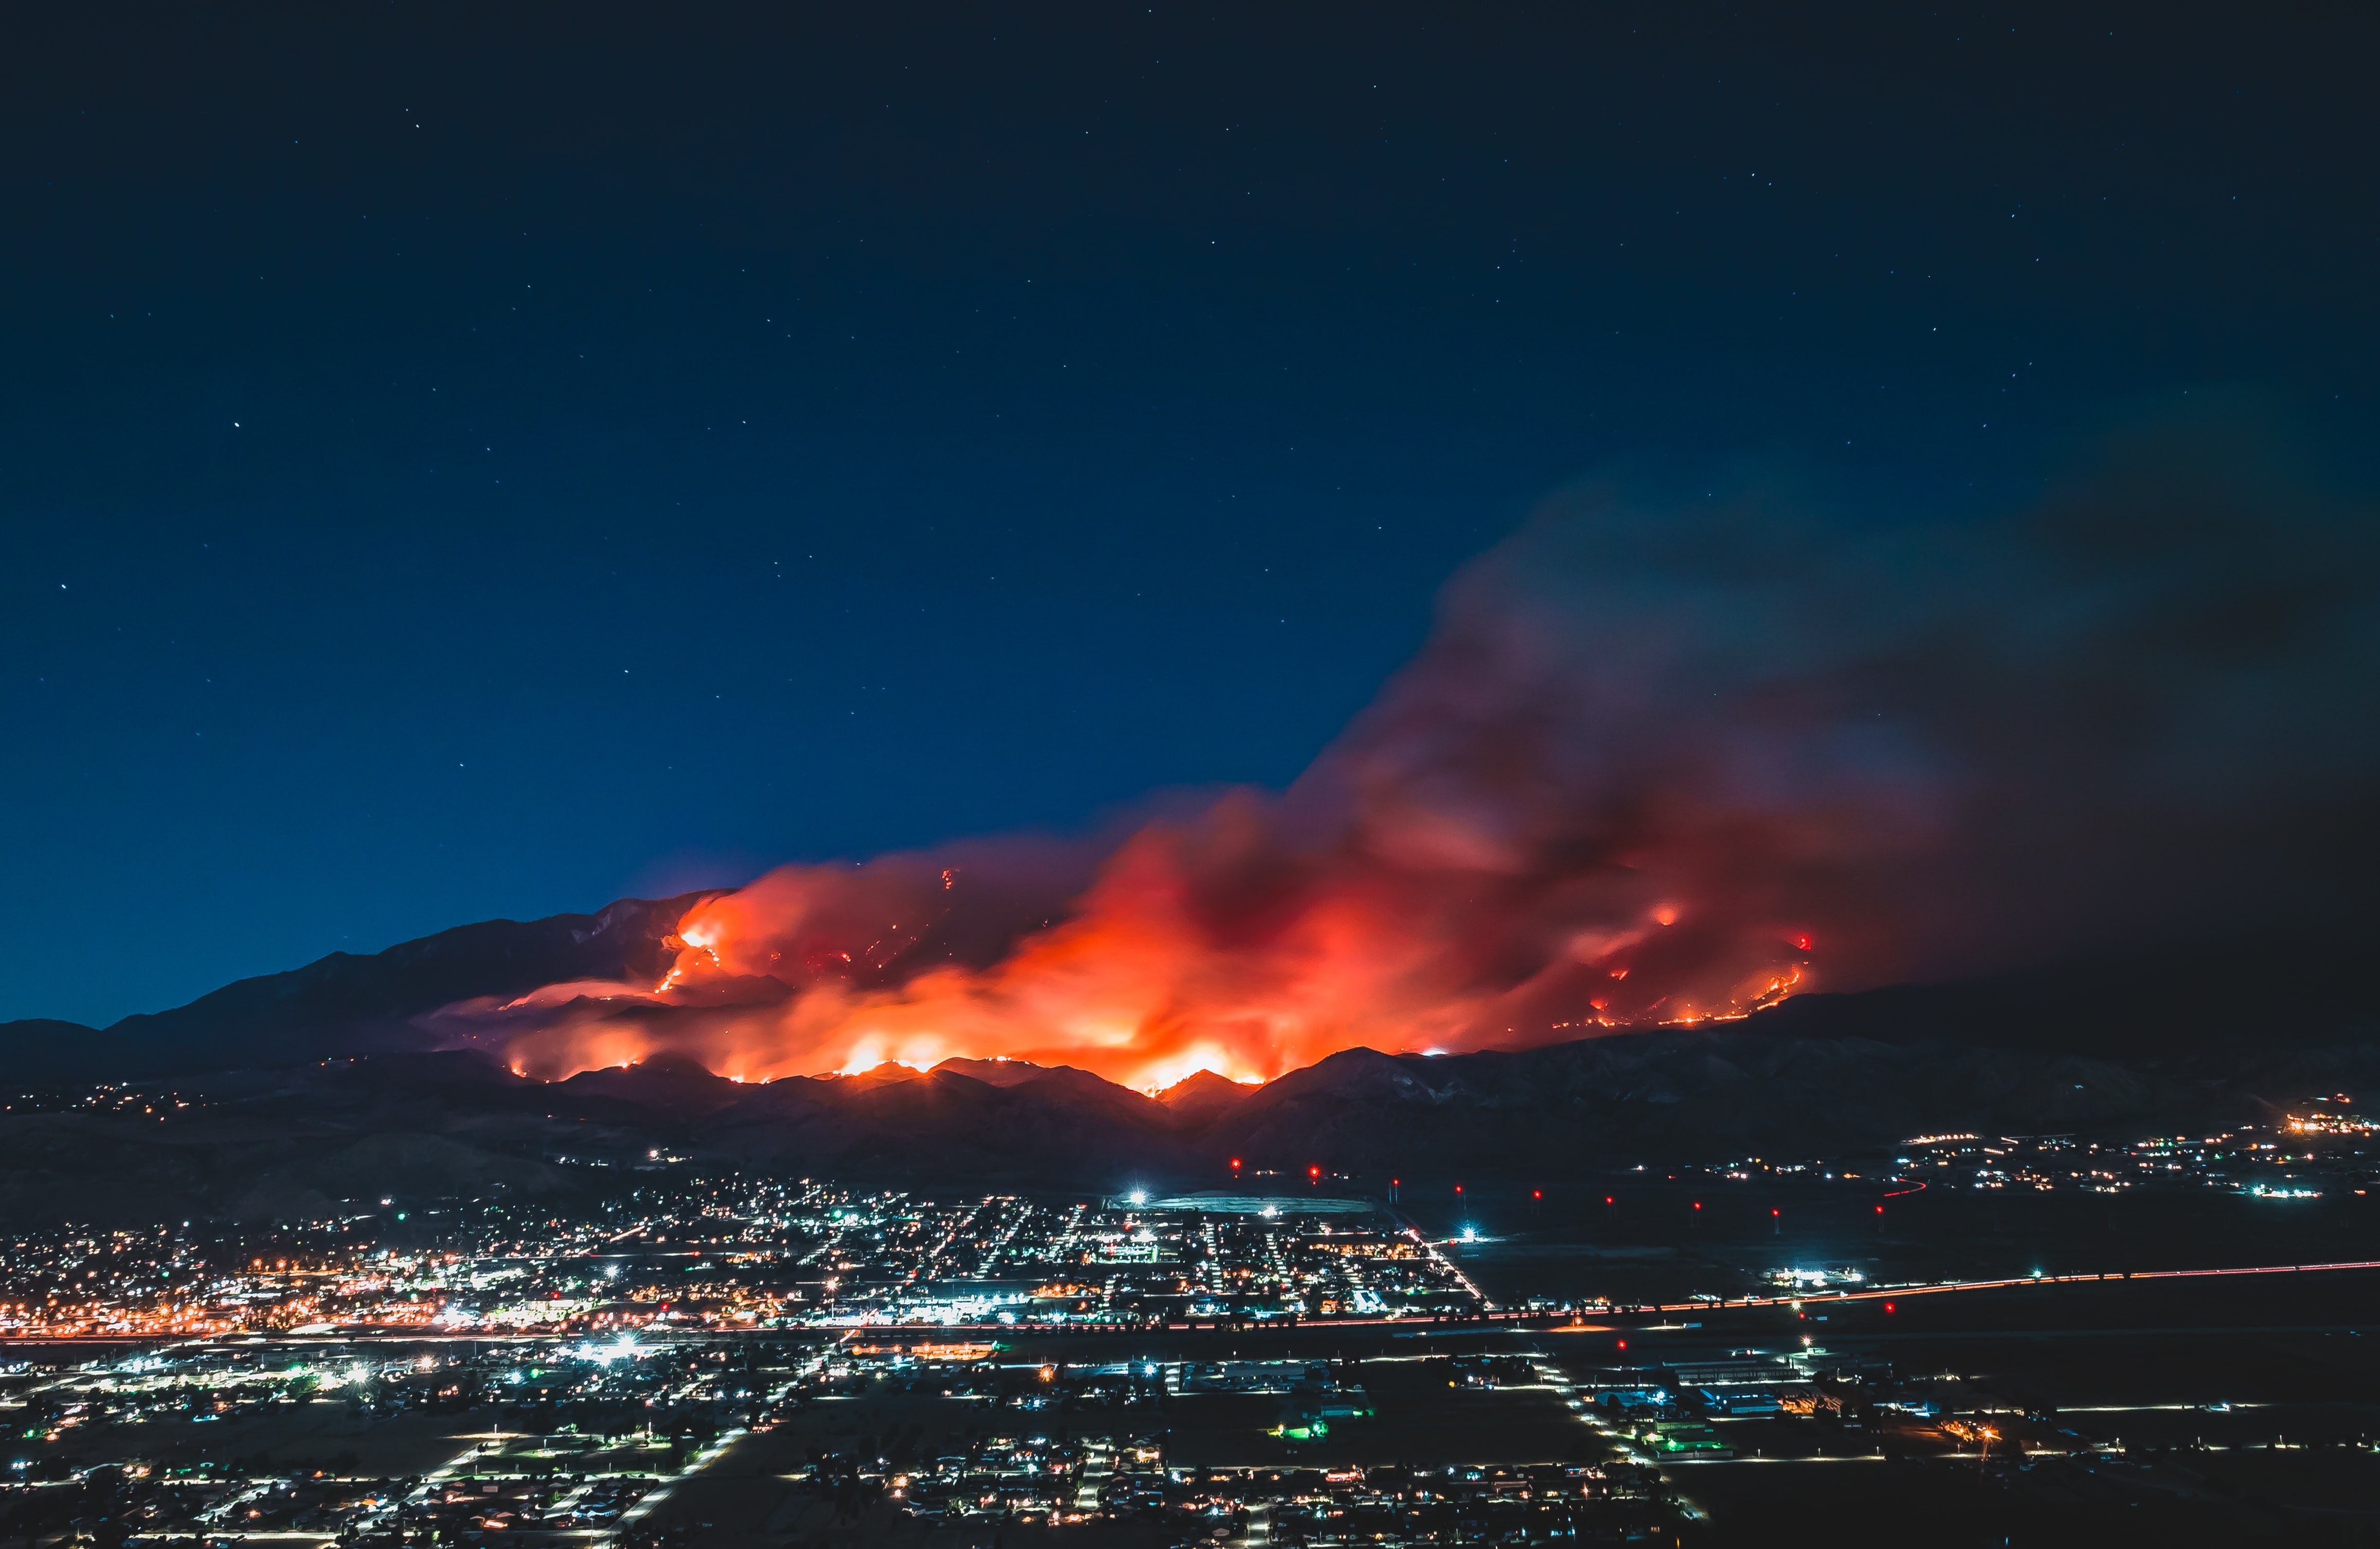 Fires at Idyllwild-Pine Cove, CA, USA. Photo: Levan Badzgaradze